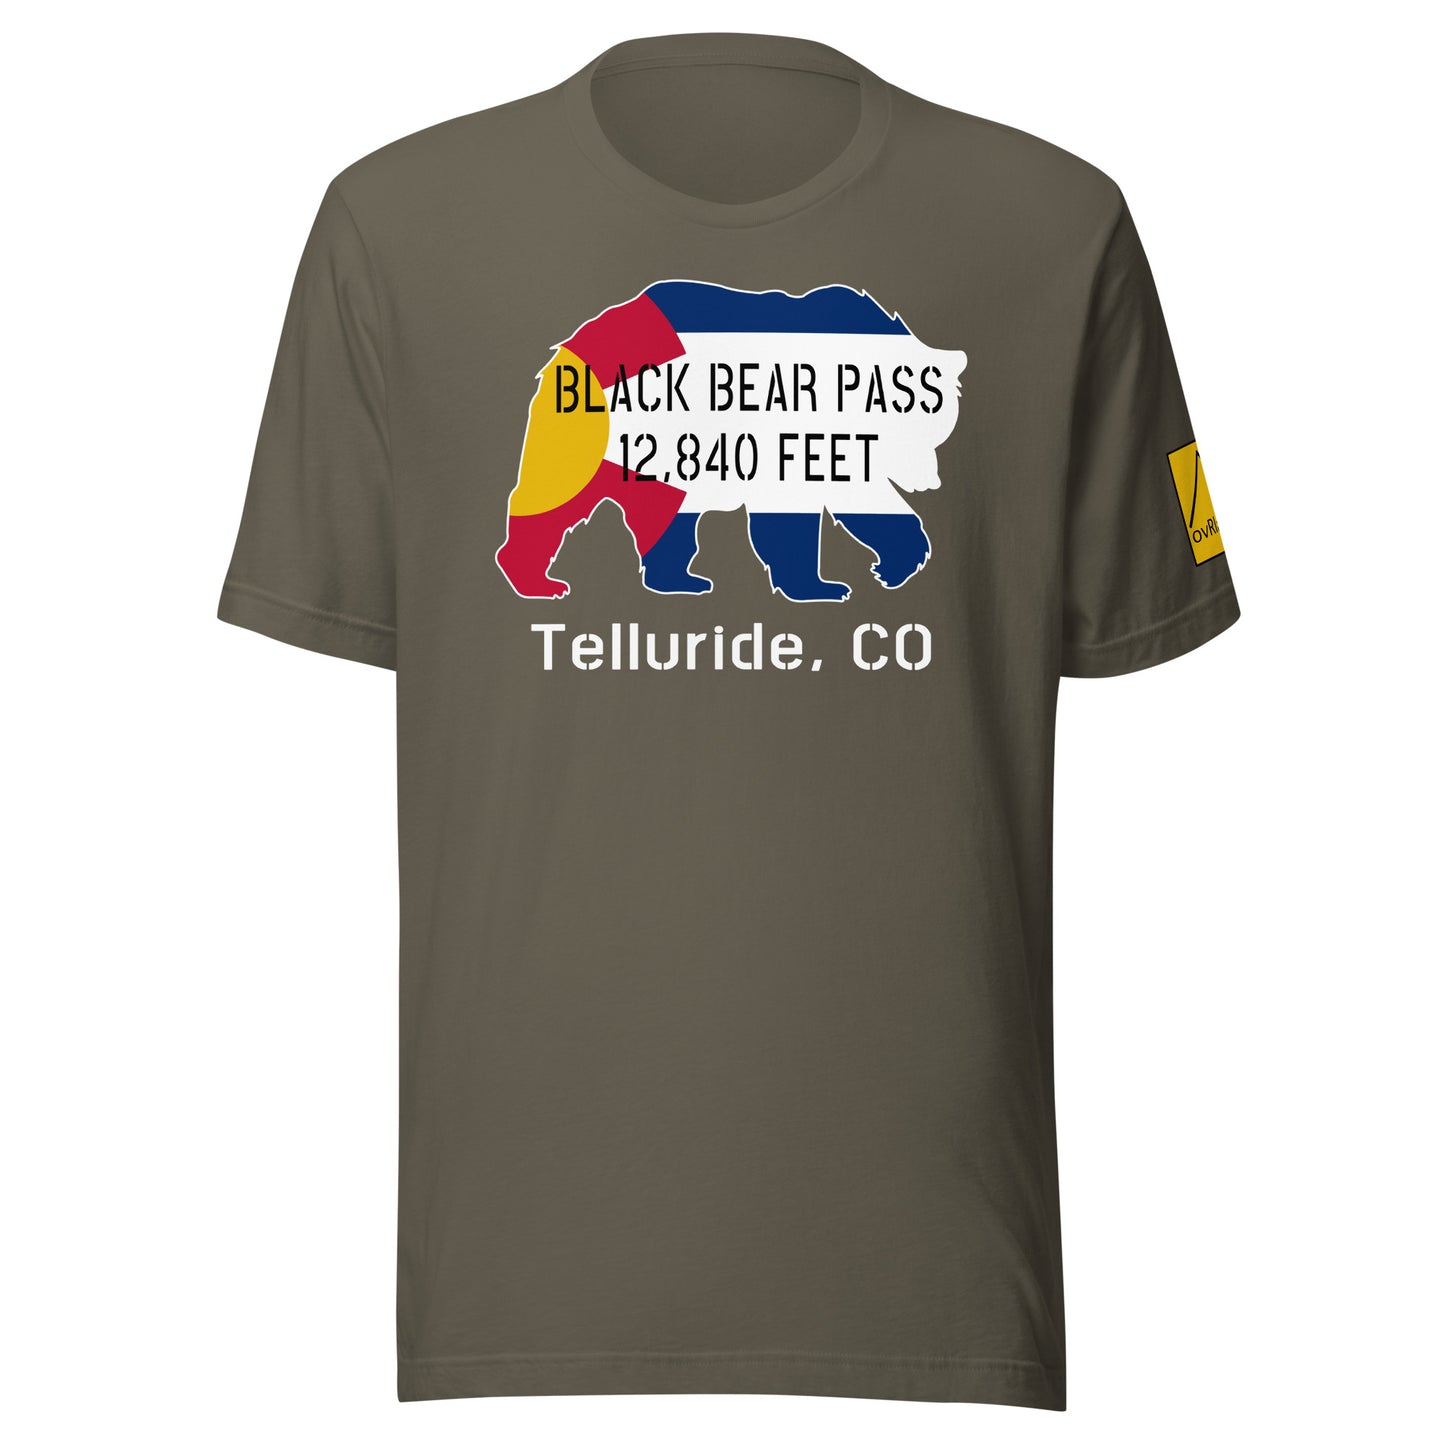 Black Bear Pass, 12840 feet, Telluride, CO. Green T-shirt. overland365.com